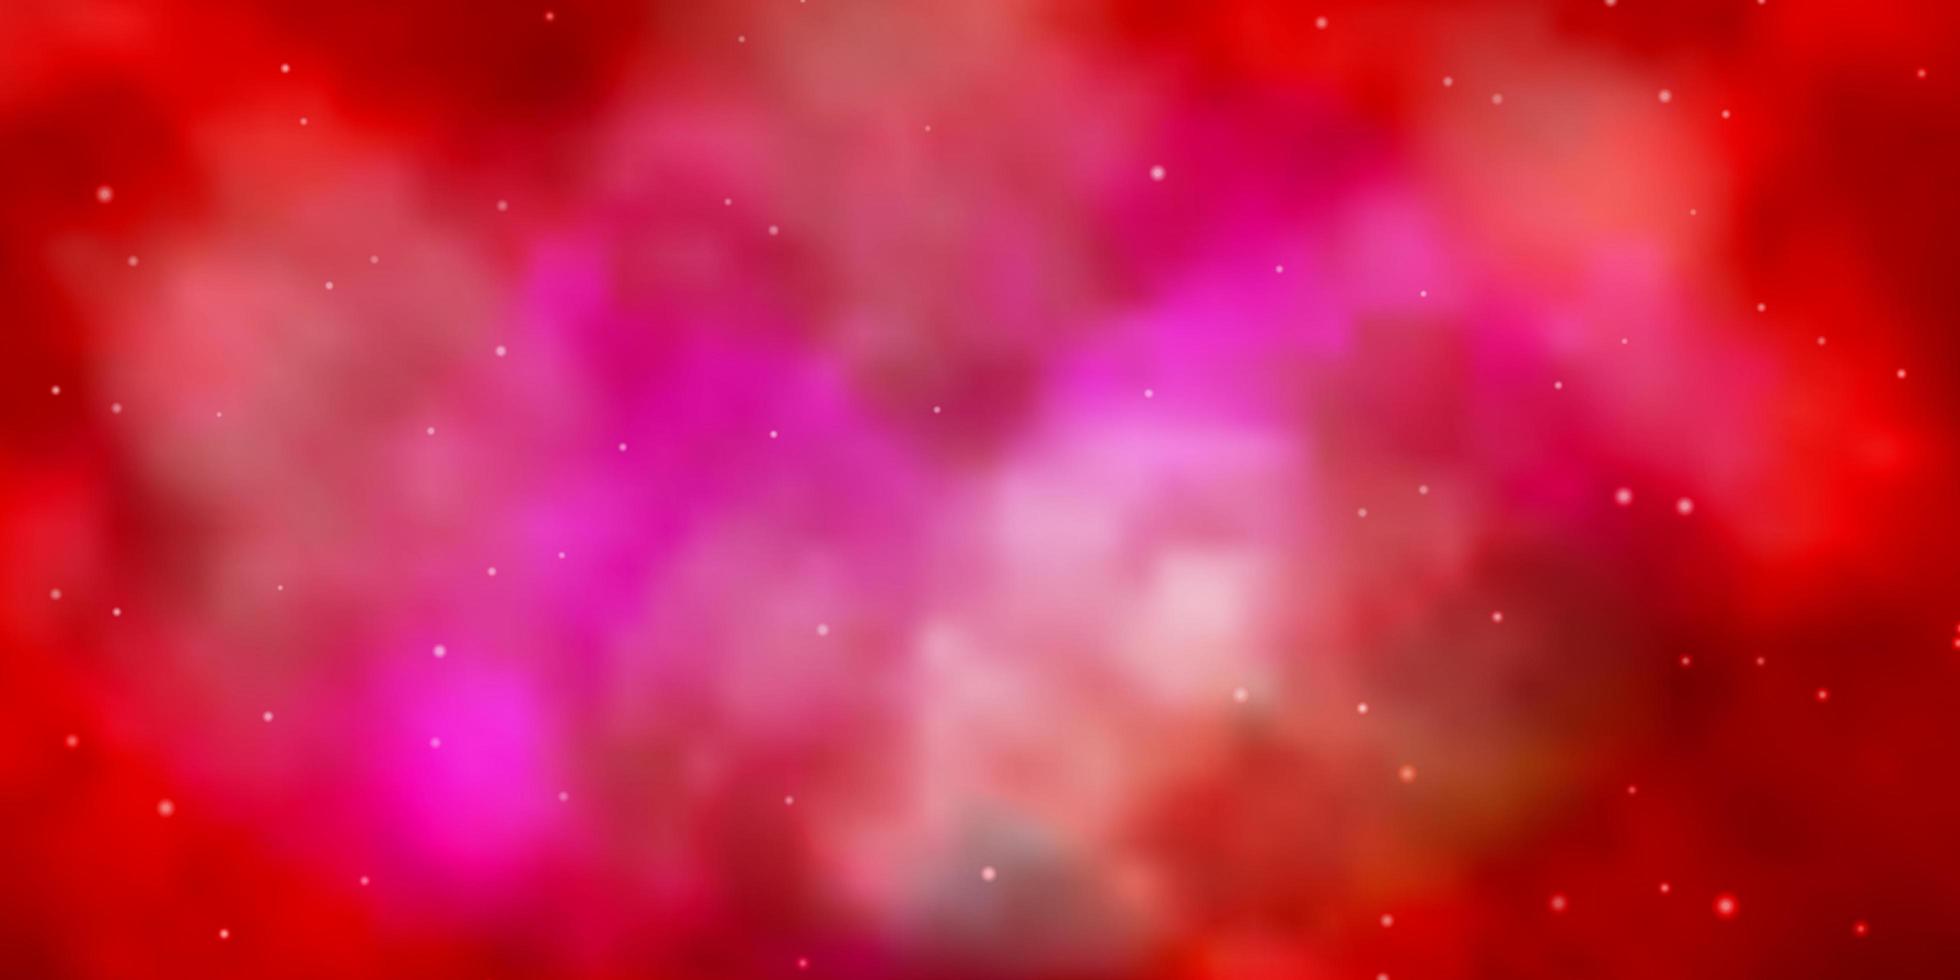 sfondo vettoriale rosso chiaro con stelle colorate.